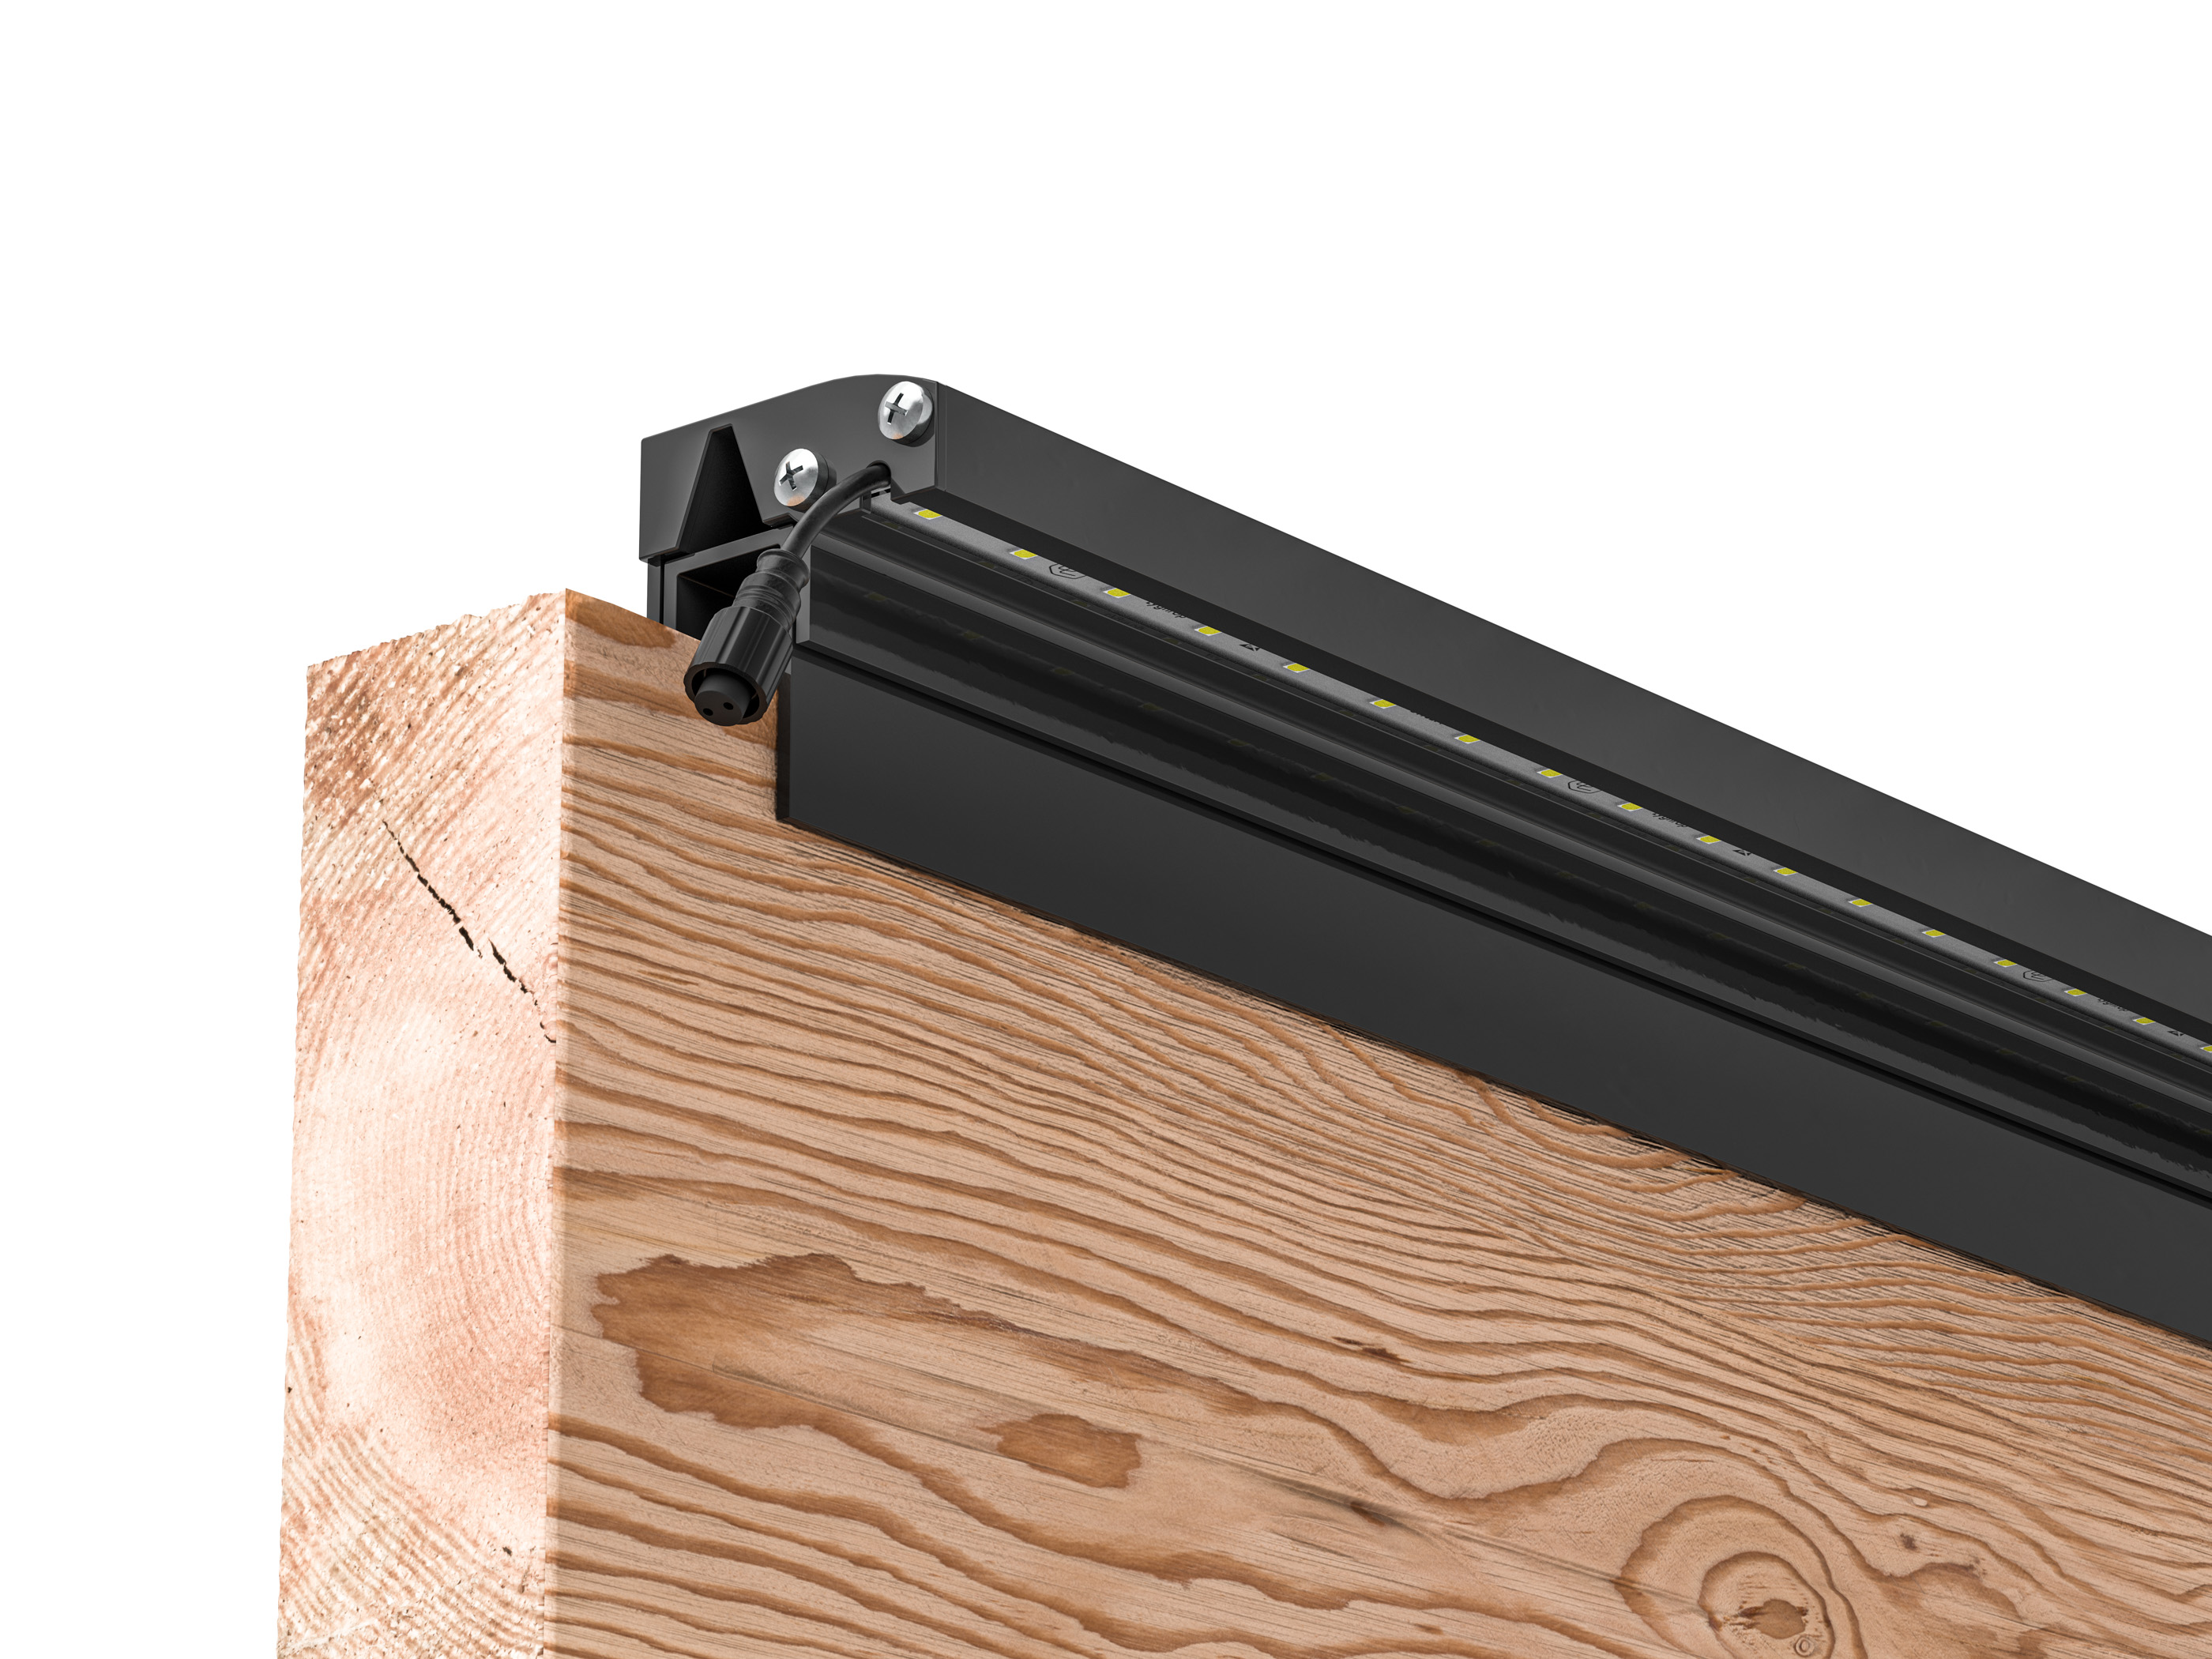 LED Prestige Leuchtleisten Starter-Set 3x 173,3 cm — anthrazit für Holzzaun